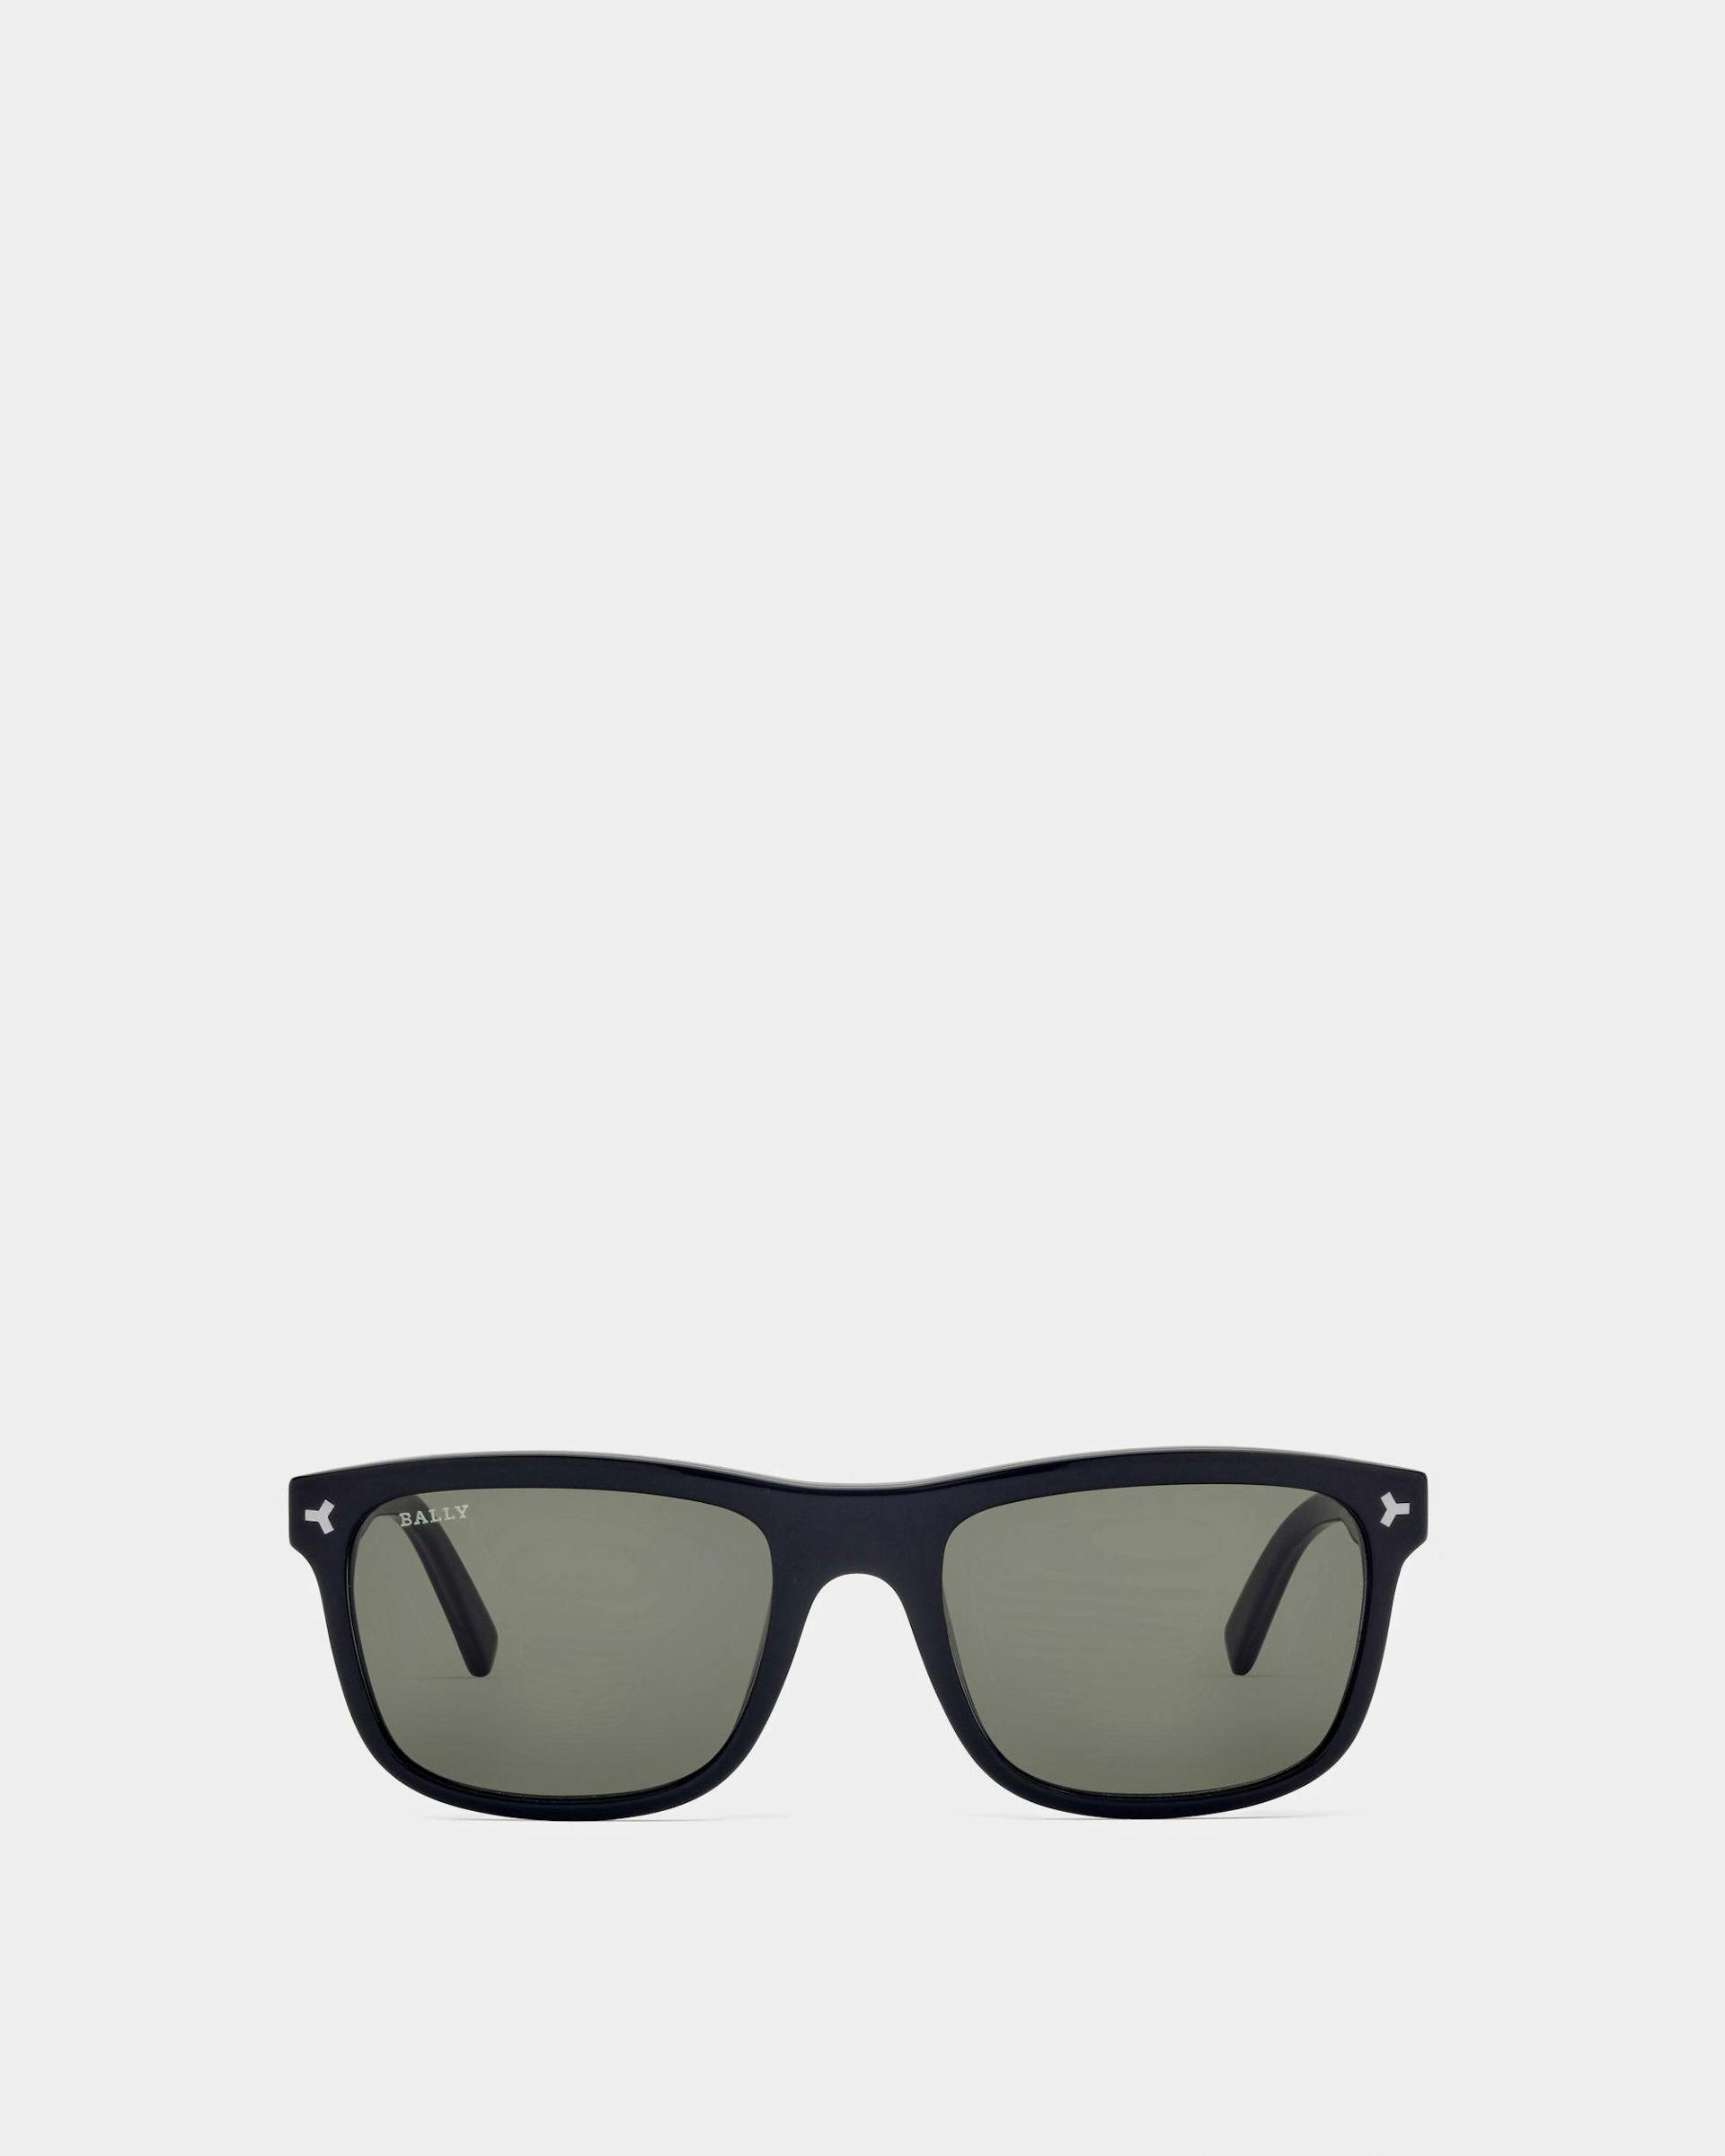 Felix Acetate Sunglasses In Shiny Black & Green Lens - Men's - Bally - 01